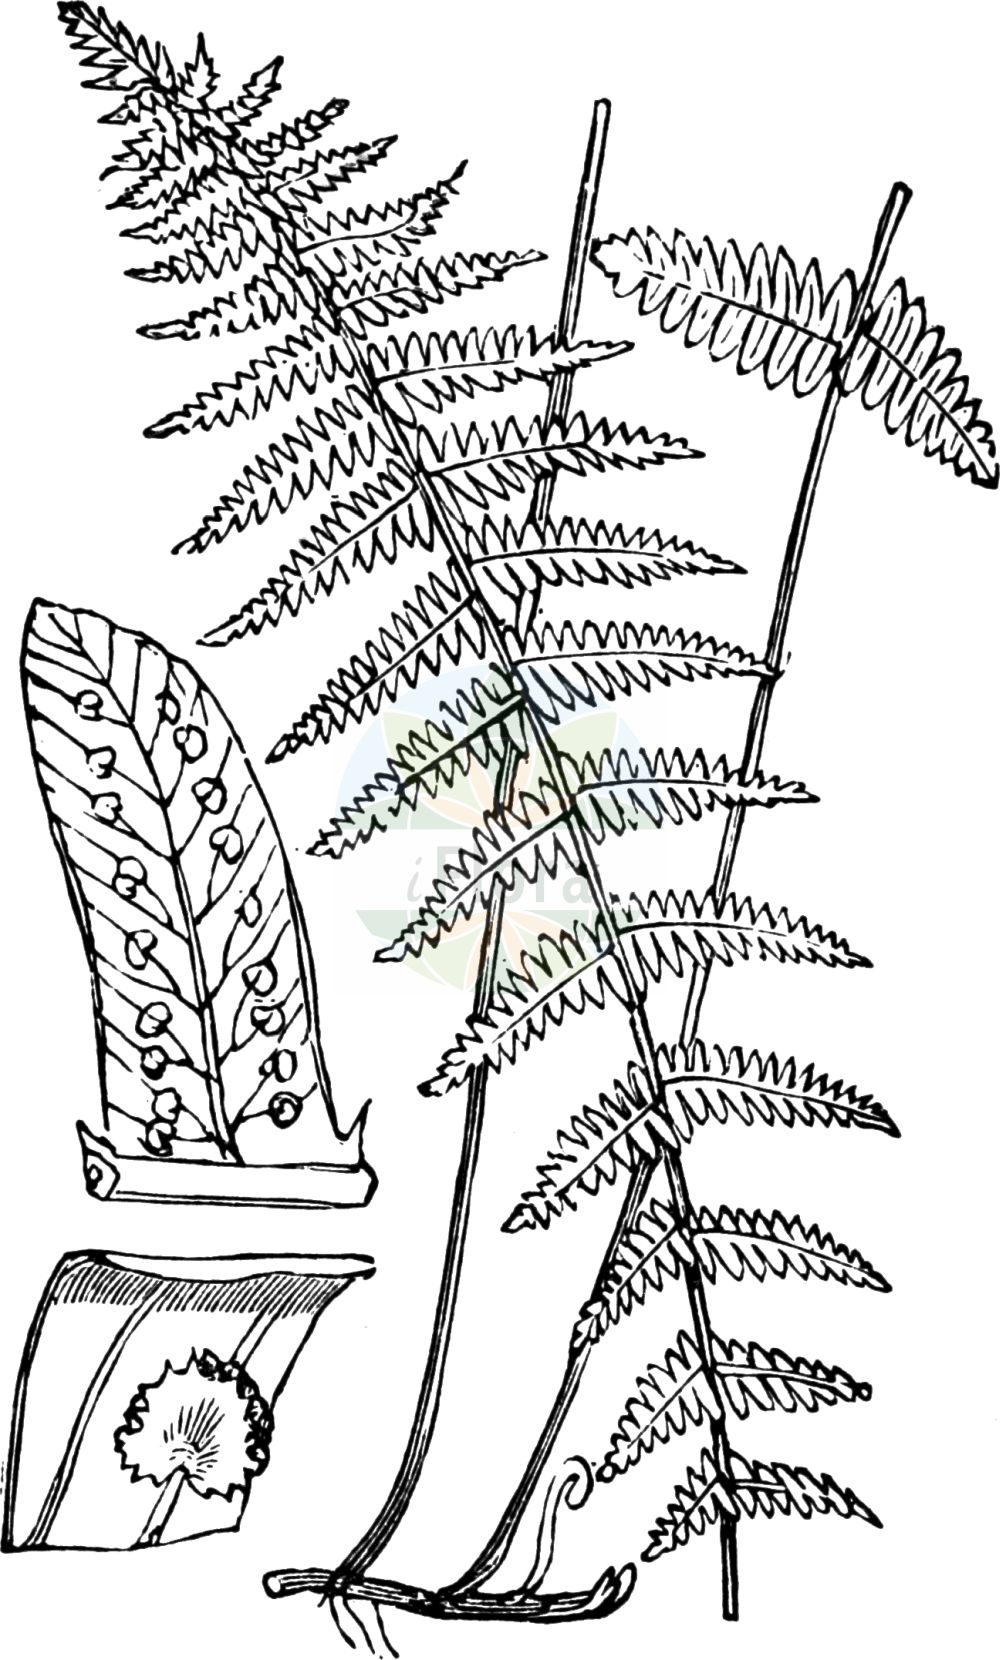 Historische Abbildung von Thelypteris palustris (Echter Sumpffarn - Marsh Fern). Das Bild zeigt Blatt, Bluete, Frucht und Same. ---- Historical Drawing of Thelypteris palustris (Echter Sumpffarn - Marsh Fern). The image is showing leaf, flower, fruit and seed.(Thelypteris palustris,Echter Sumpffarn,Marsh Fern,Acrostichum thelypteris,Aspidium thelypteris,Dryopteris thelypteris,Lastrea thelypteris,Nephrodium thelypteris,Polystichum thelypteris,Thelypteris palustris,Thelypteris thelypterioides subsp. glabra,Echter Sumpffarn,Sumpffarn,Sumpf-Lappenfarn,Marsh Fern,Eastern Marsh Fern,Thelypteris,Sumpffarn,Maiden Fern,Thelypteridaceae,Sumpffarngewächse,Maiden Fern family,Blatt,Bluete,Frucht,Same,leaf,flower,fruit,seed,Fitch et al. (1880))